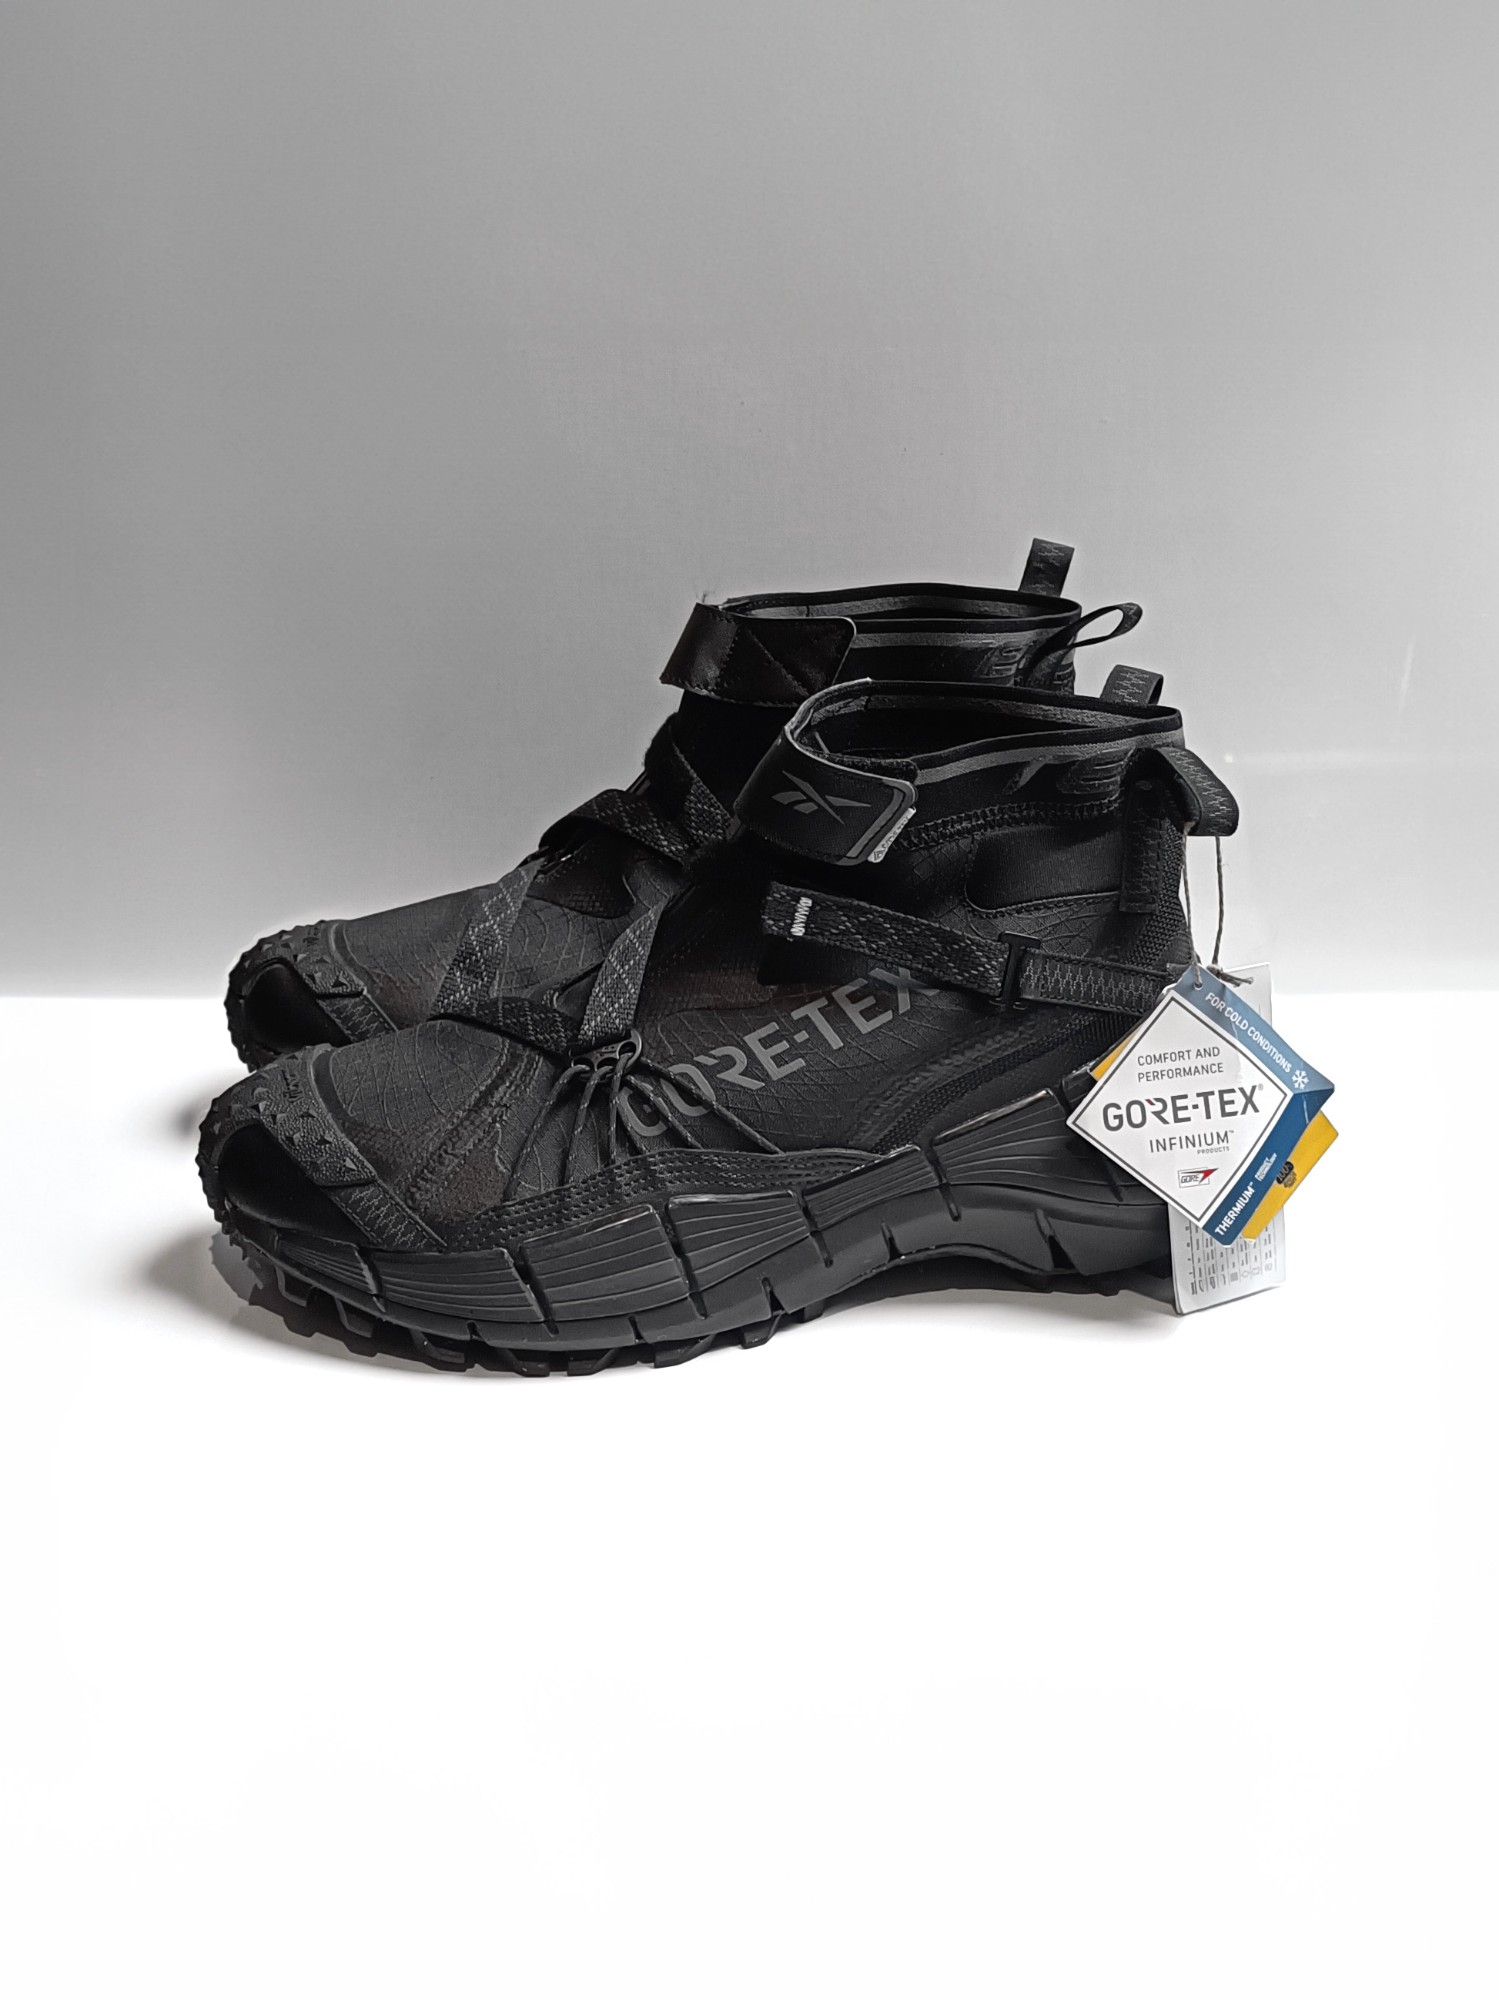 Reebok Zig Kinetica II Edge GORE-TEX 'Black' Techwear Sneakers - 2